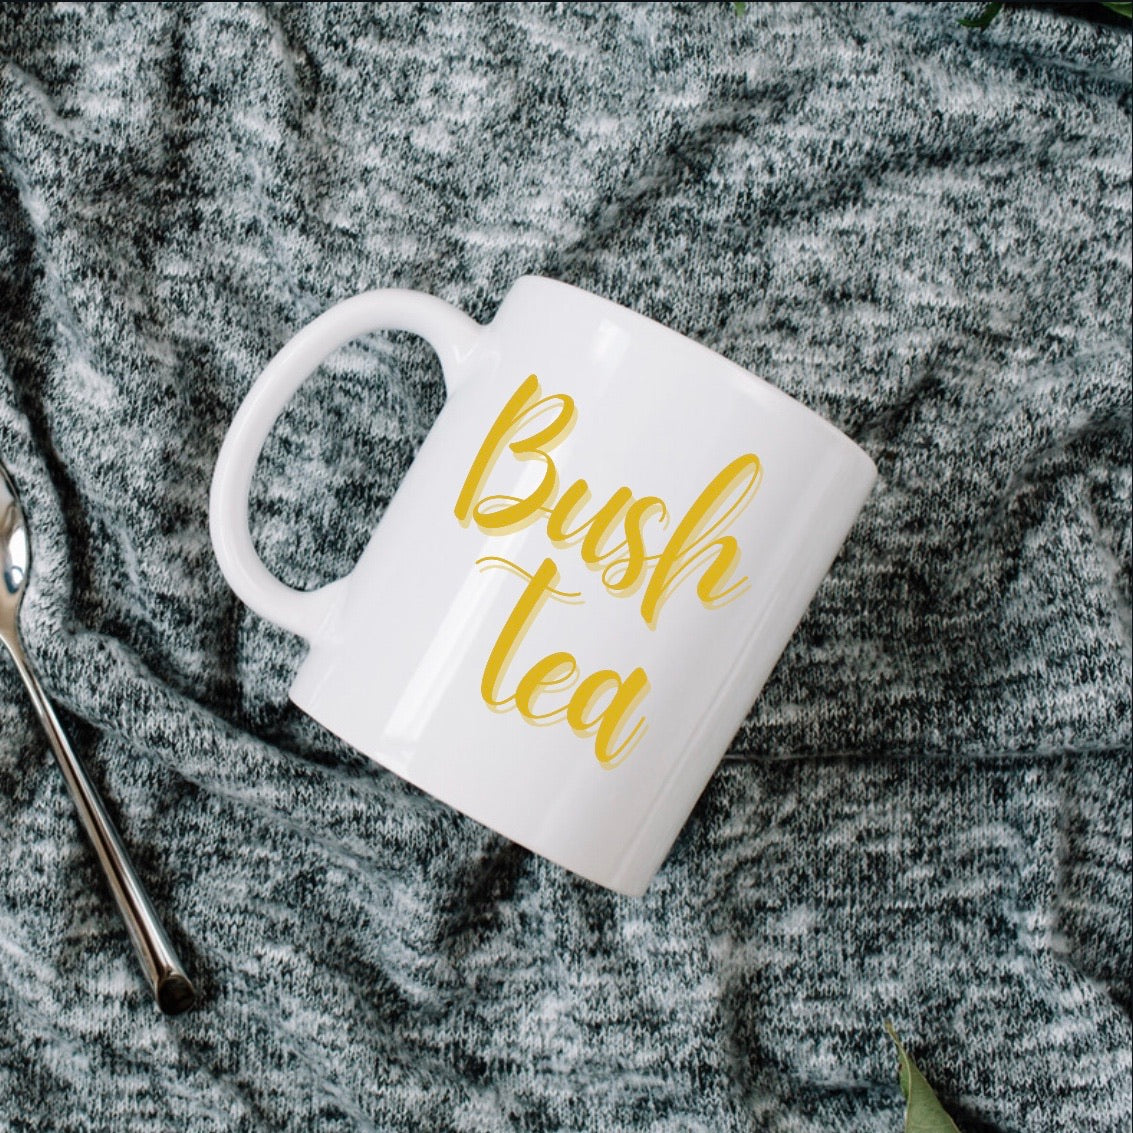 Bush Tea Mug